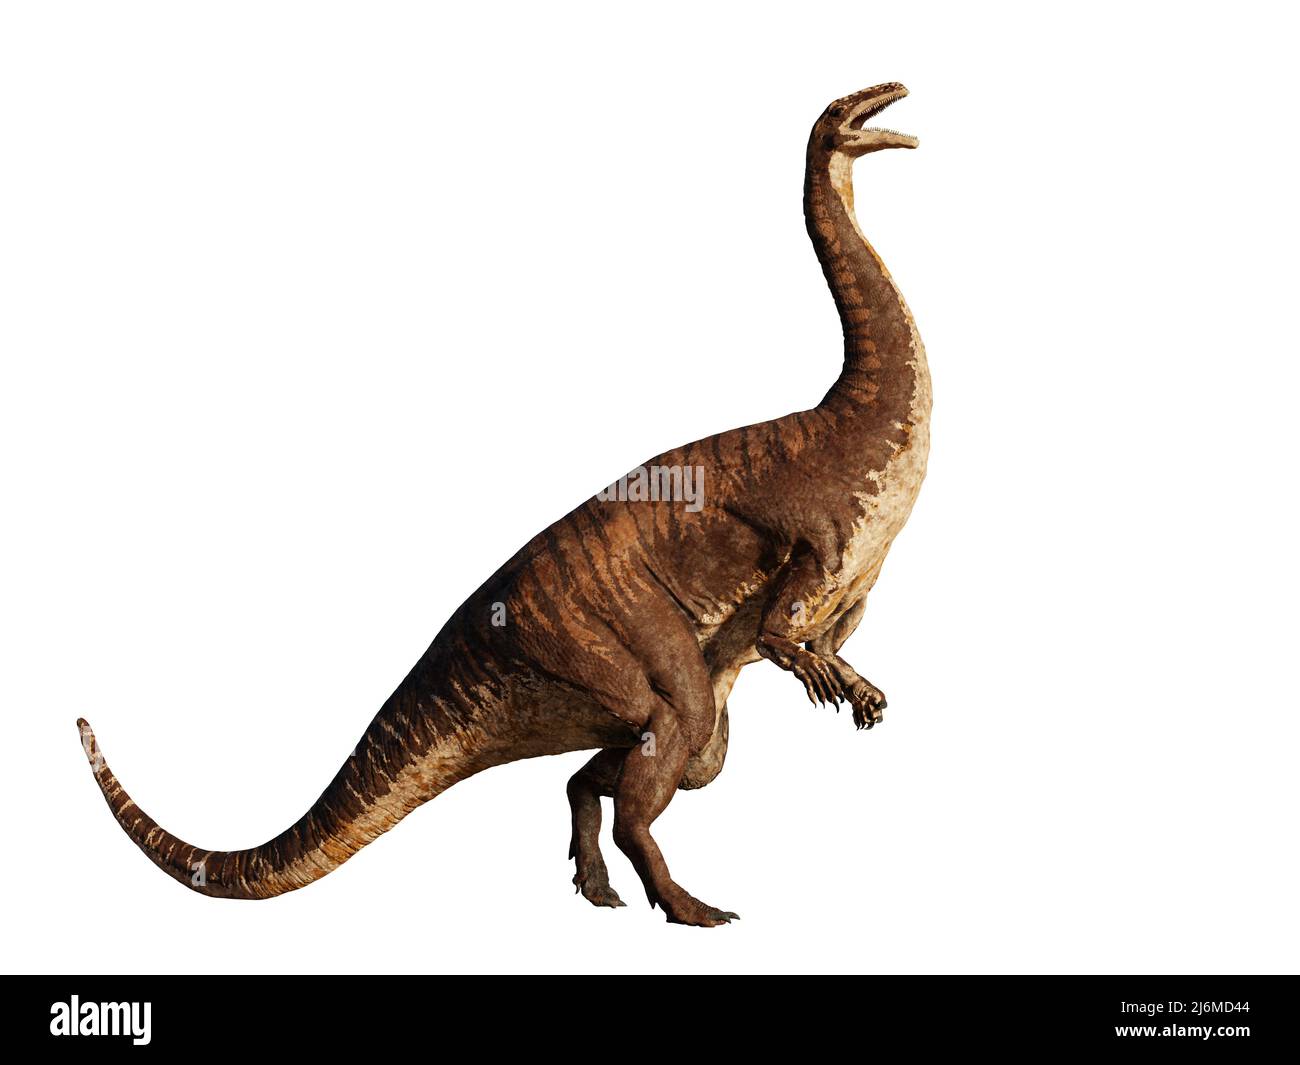 Plateaux, dinosaure bipédique de la période du Trias tardif, isolés sur fond blanc Banque D'Images